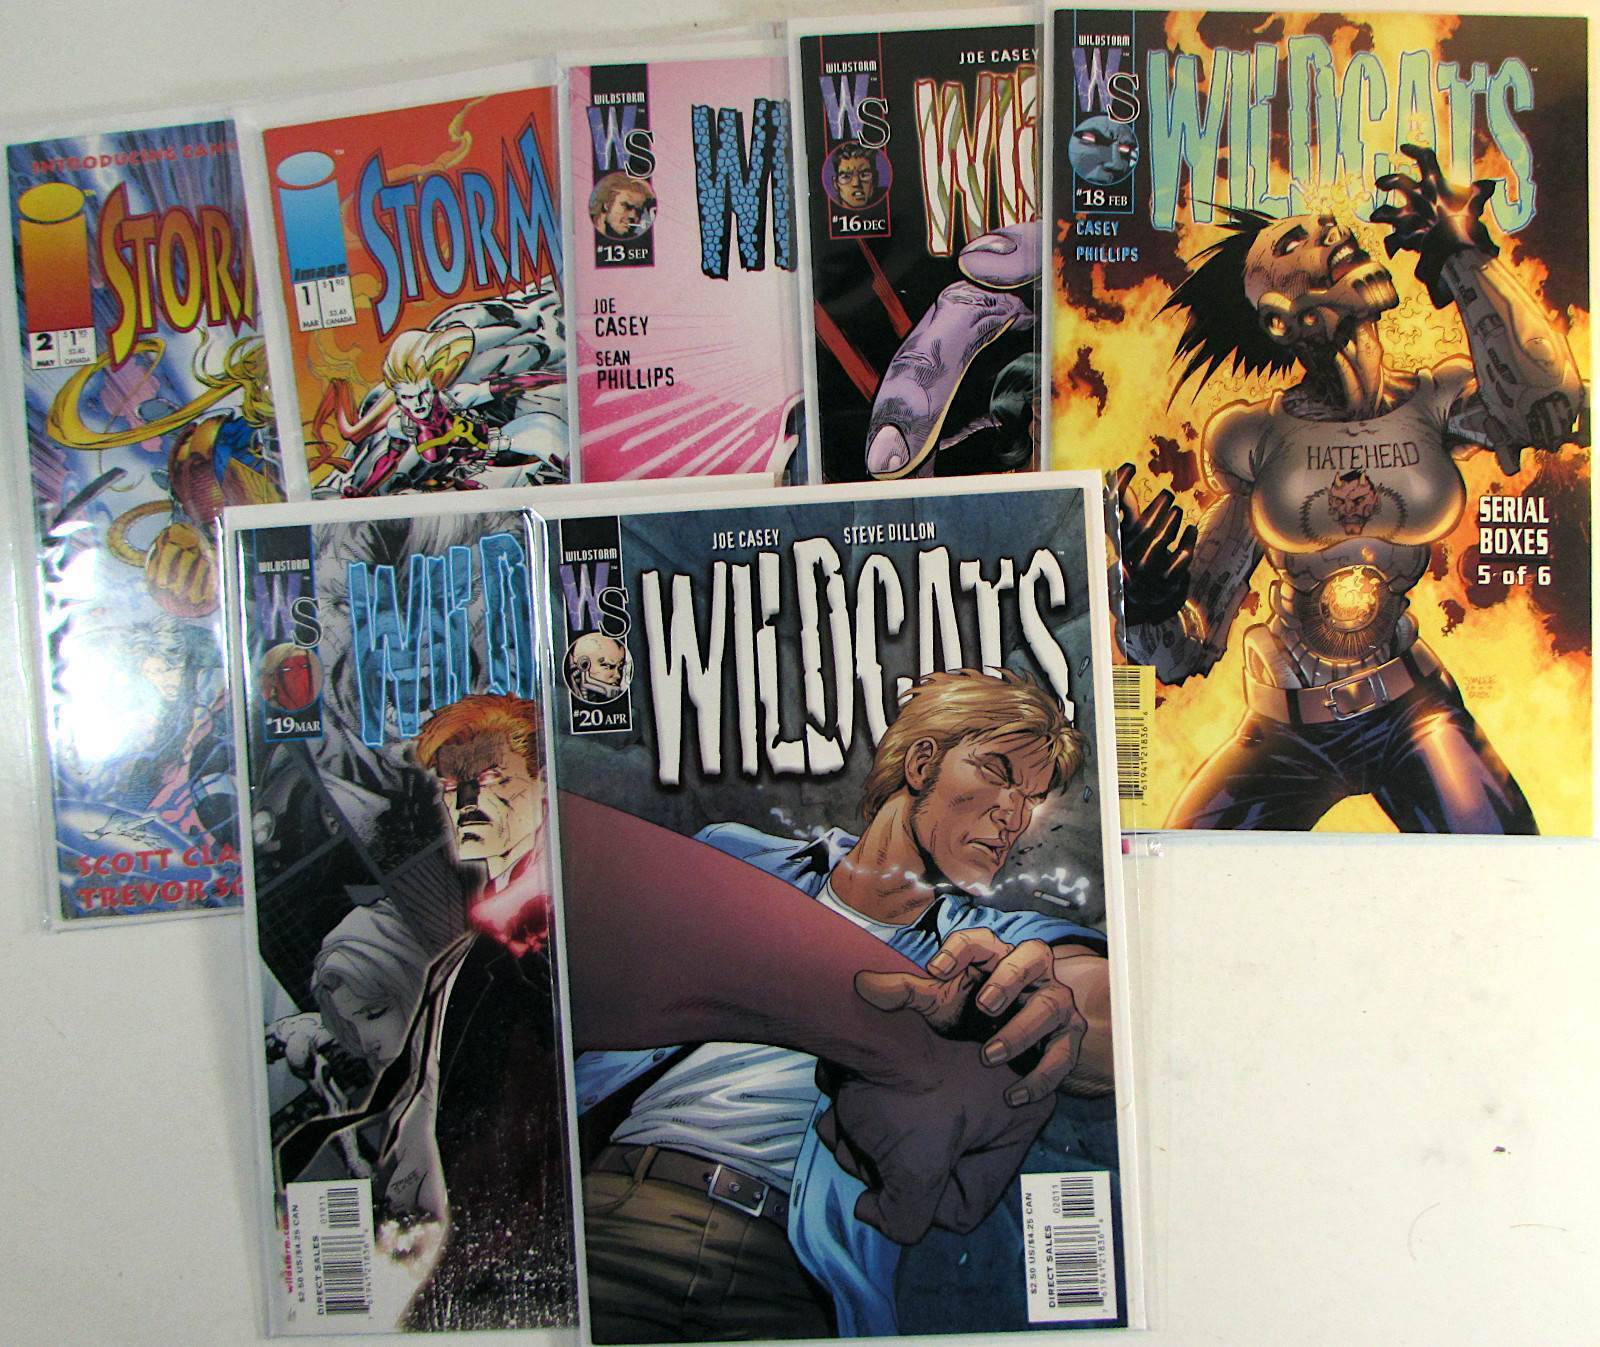 Mixed Lot of 7 #StormWatch 1,2,Wildcats 13,16,18,19,20 WildStorm (2000) Comics